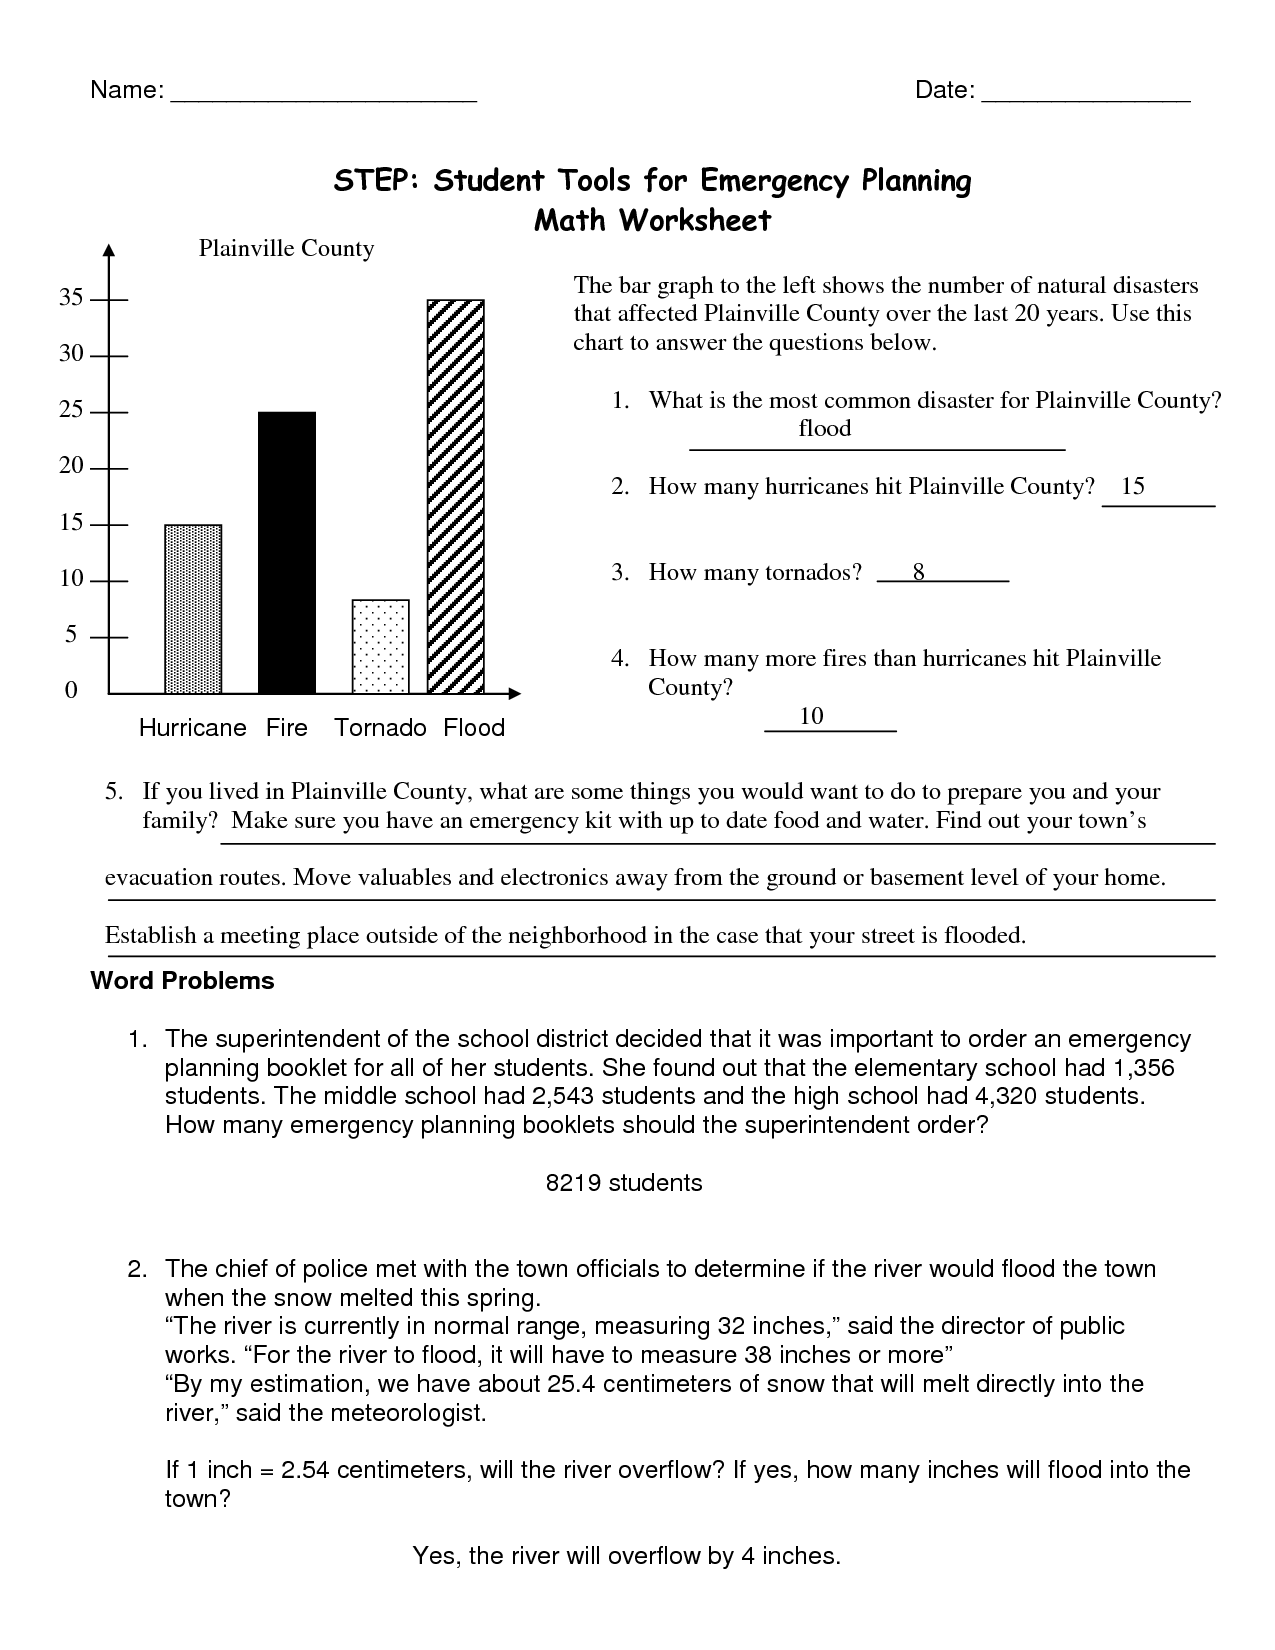 Student Planning Worksheet Image